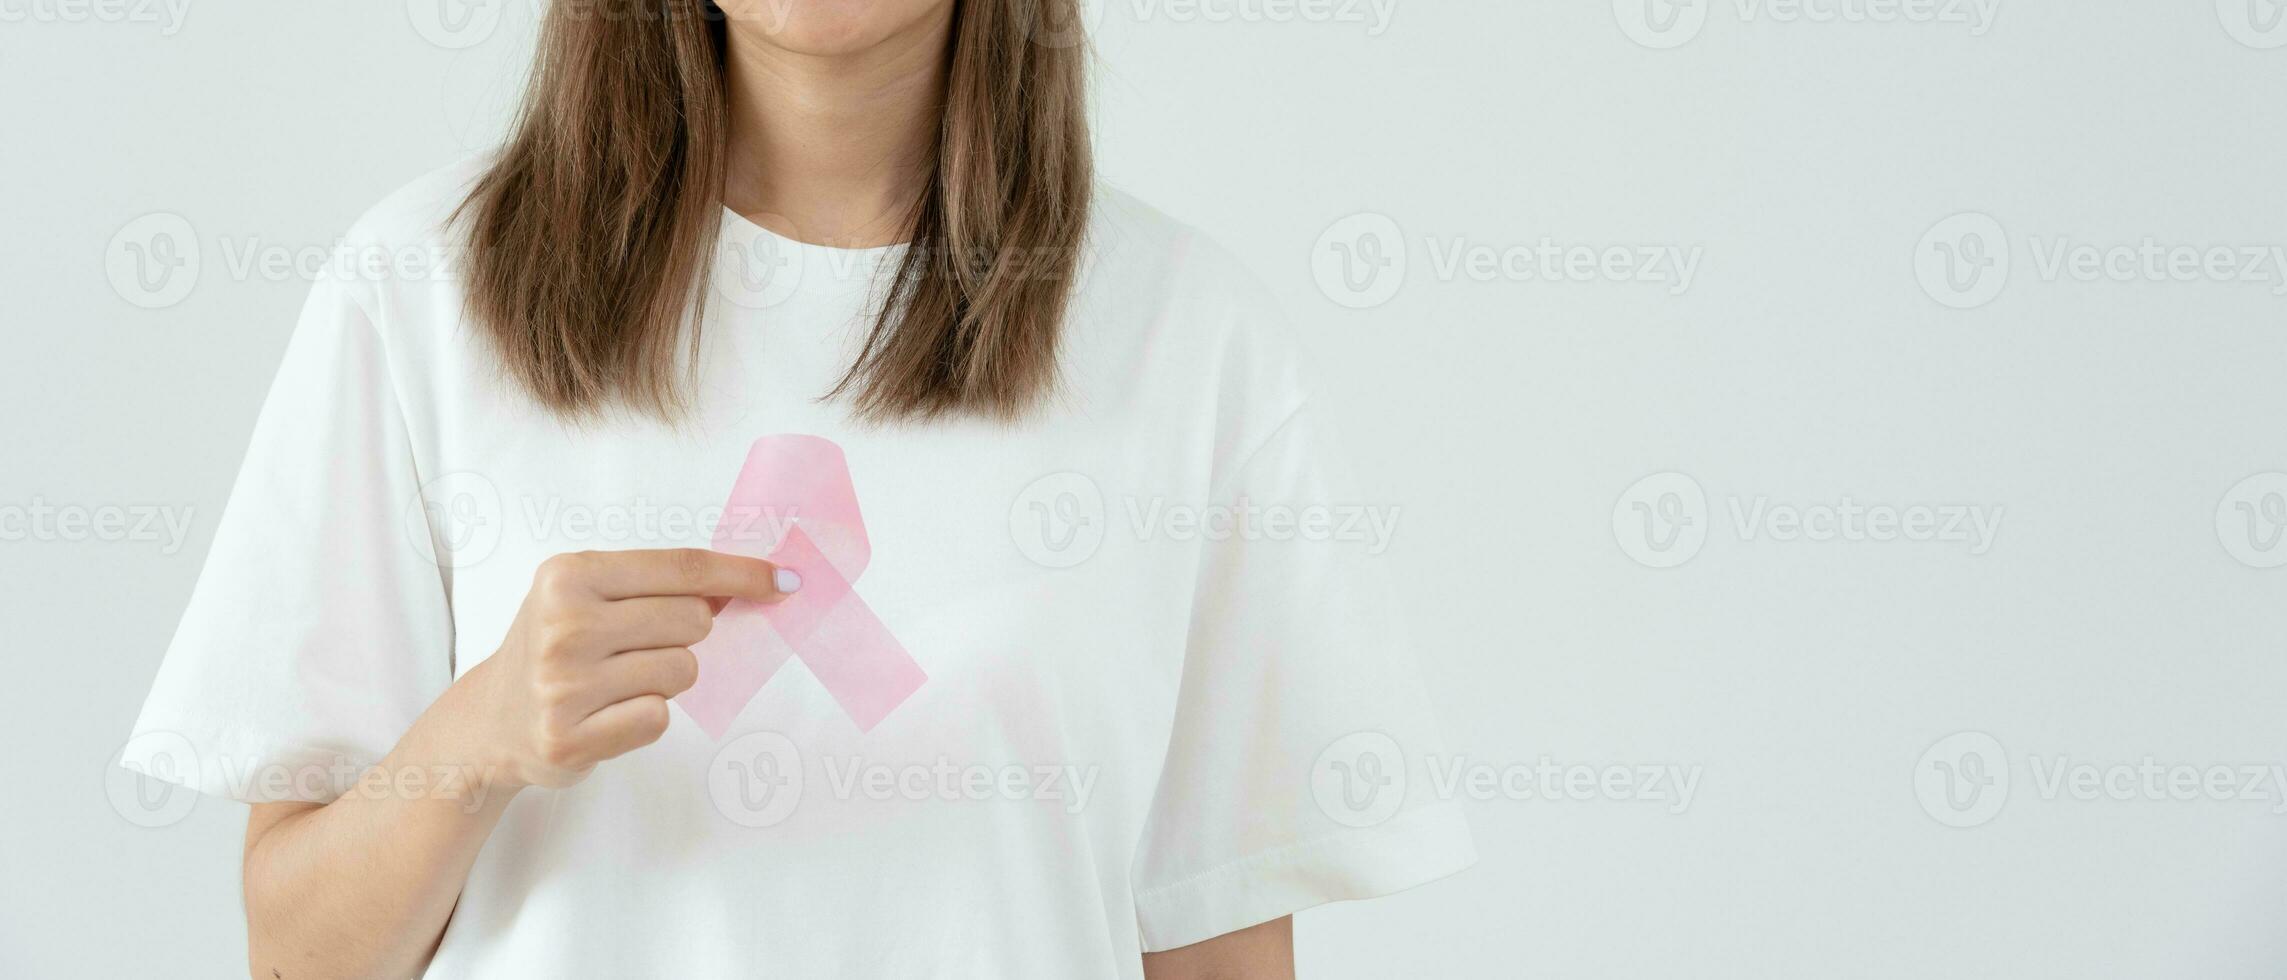 mulher segura fita rosa consciência do câncer de mama. consciência de verificação de saúde feminina. dia internacional da mulher e dia mundial do câncer. assinar câncer, simbólico, cuidados de saúde, apoiar pacientes, diagnóstico oportuno foto